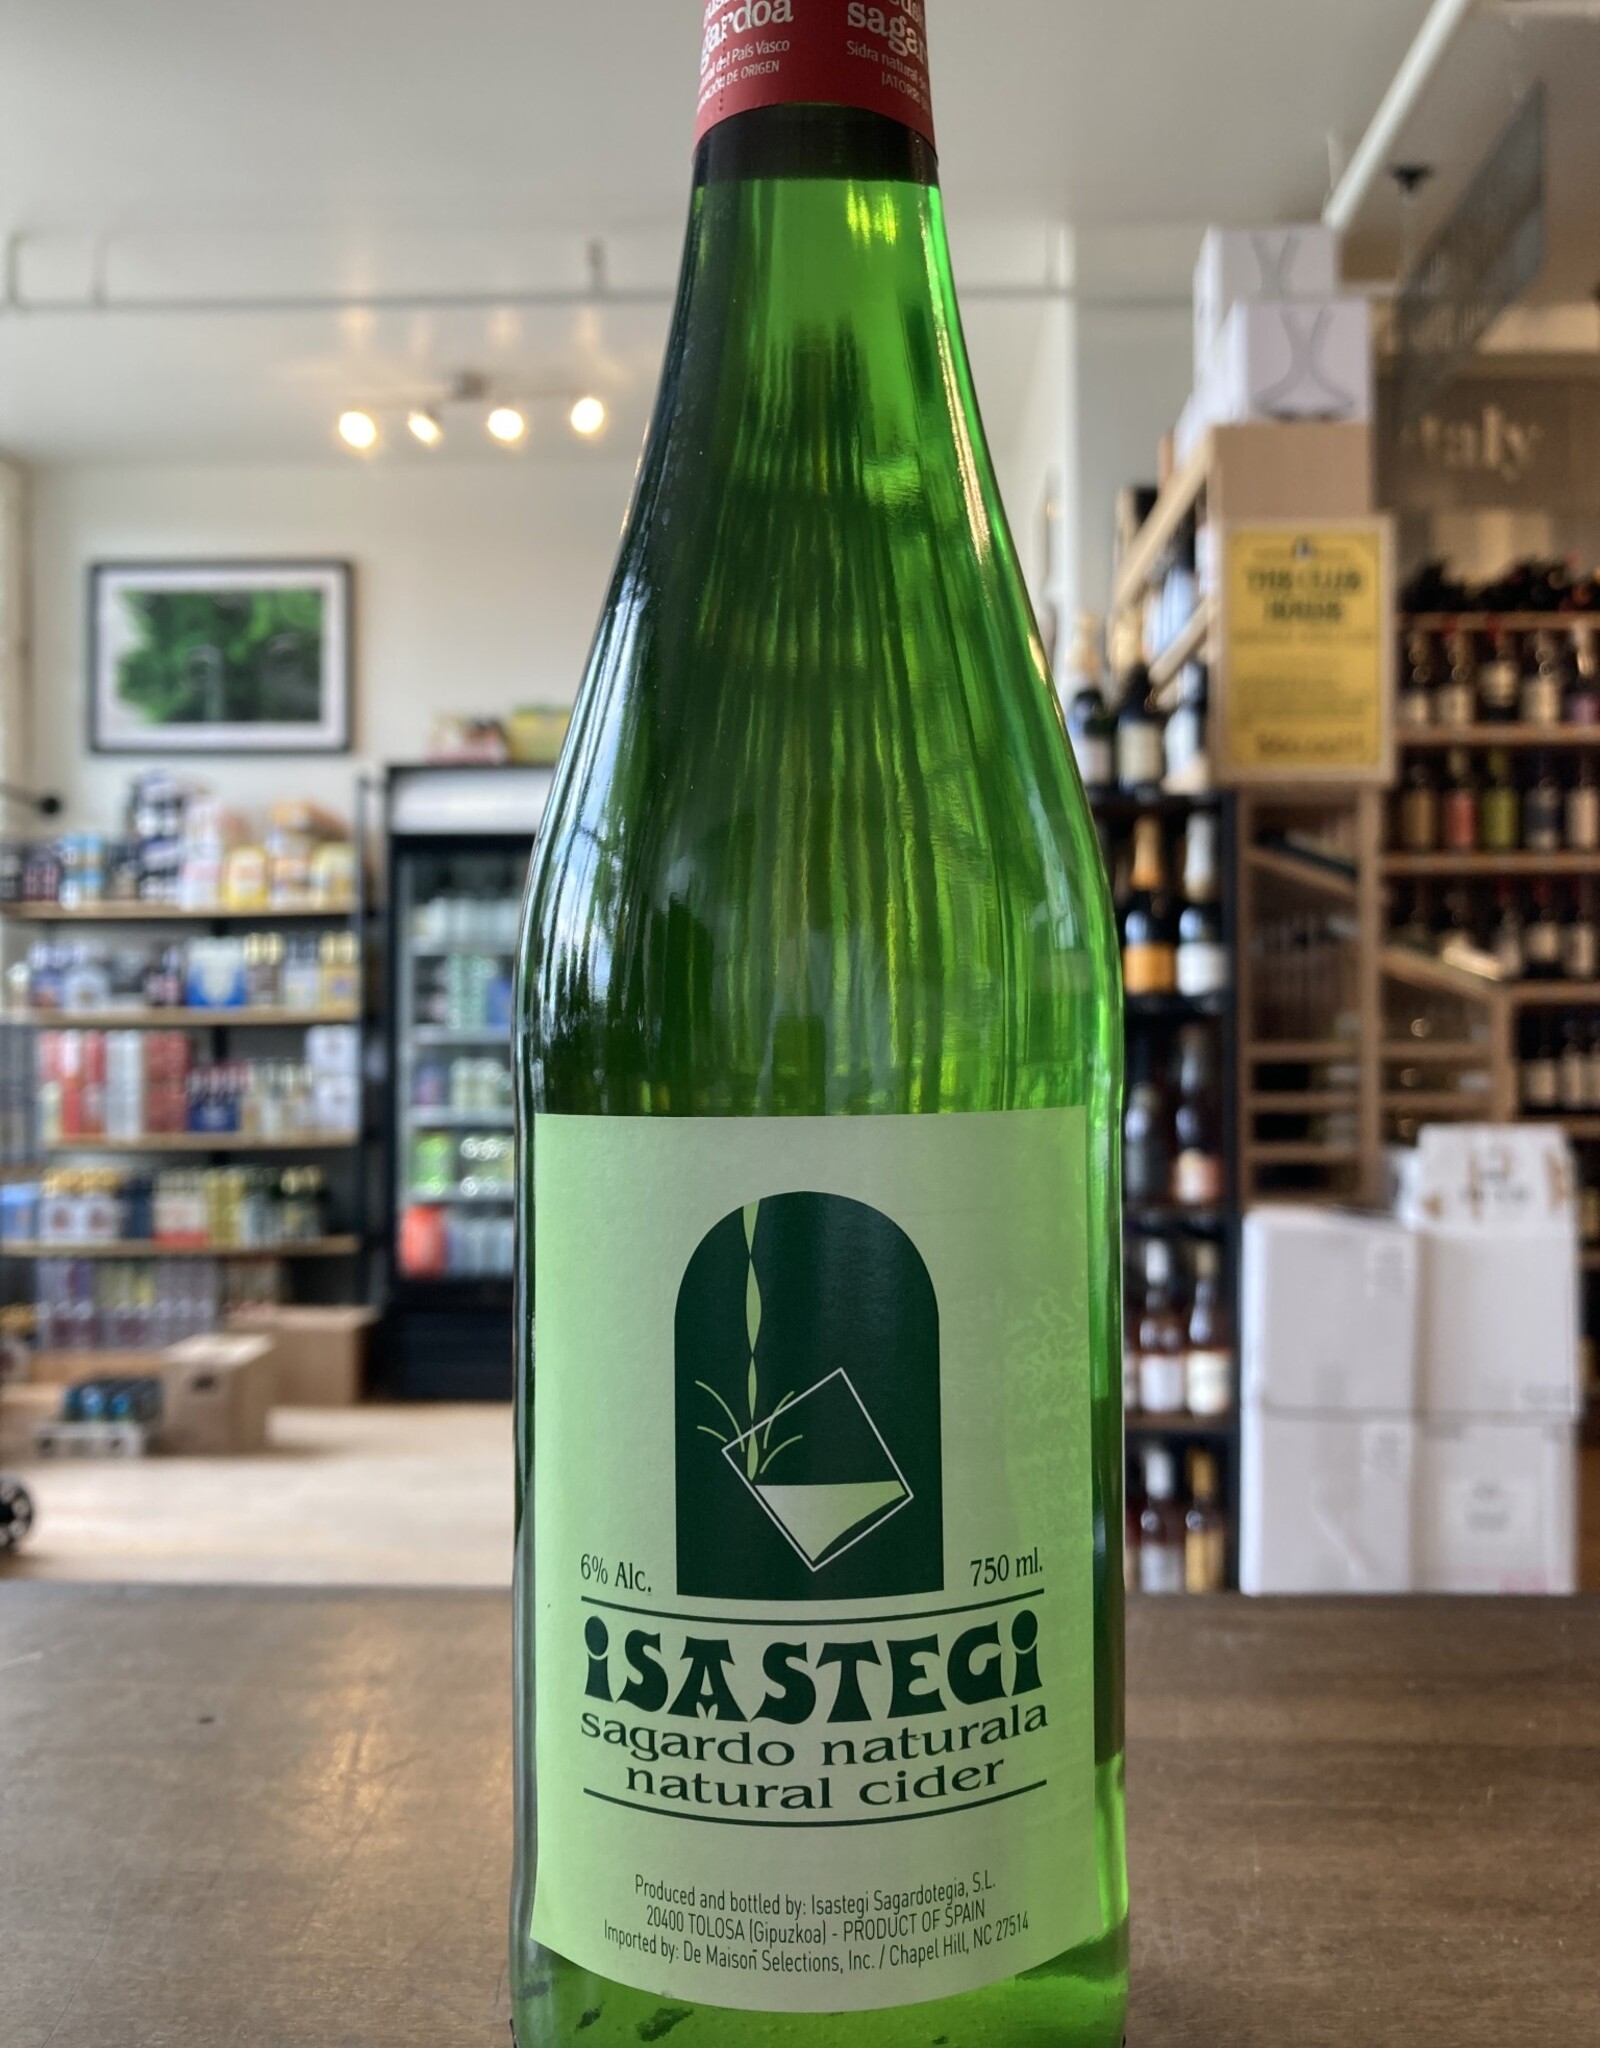 Isastegi Cider, Basque